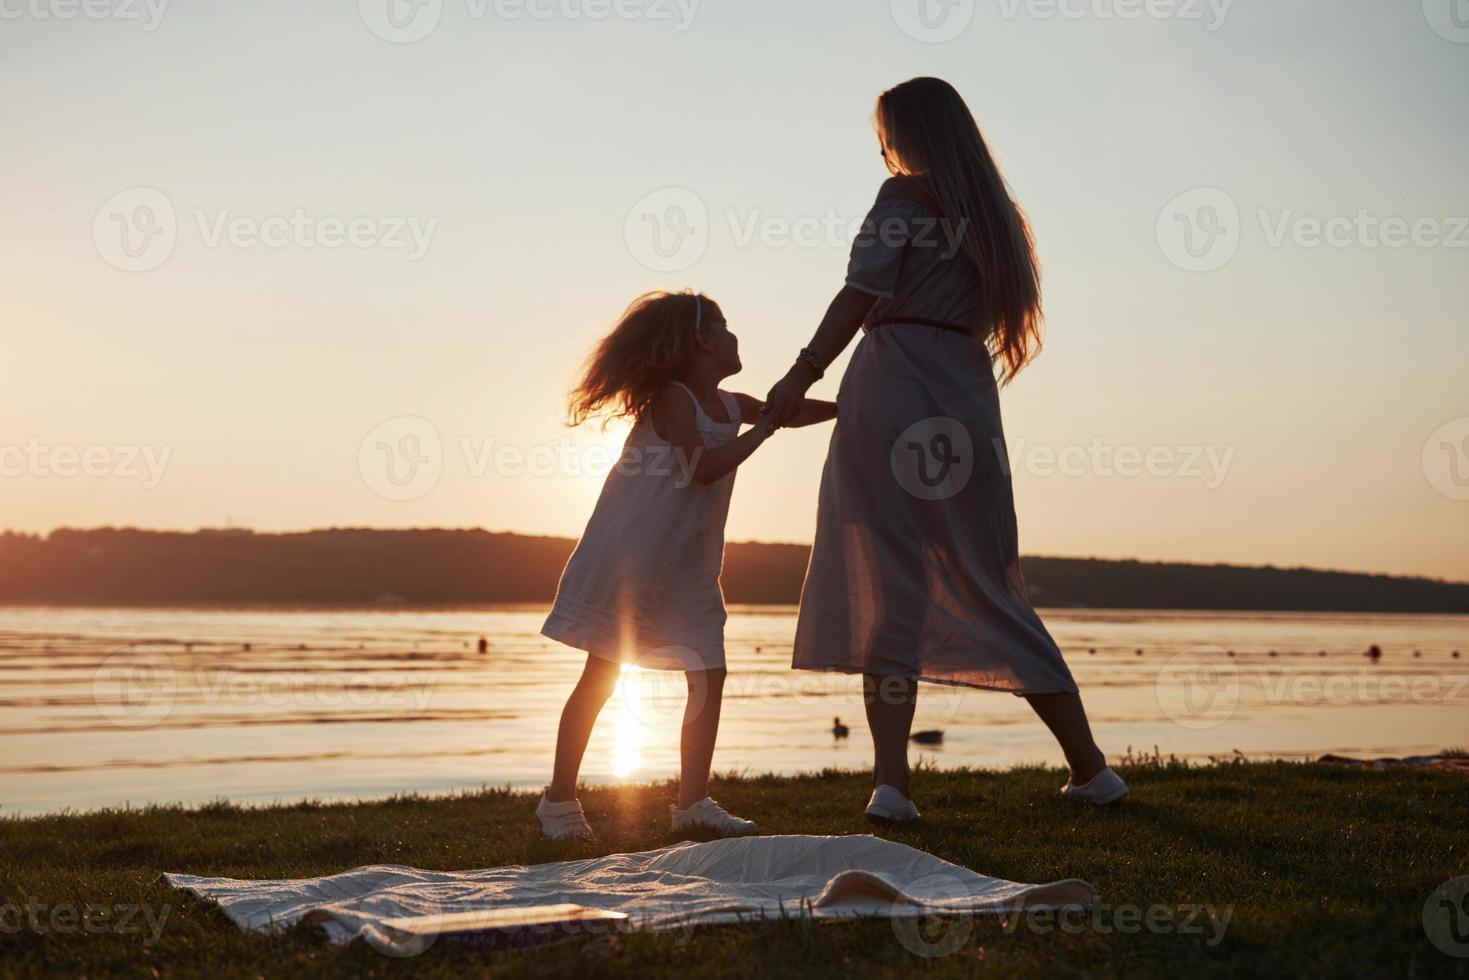 moeder speelt met haar baby op vakantie in de buurt van de oceaan, silhouetten bij zonsondergang foto